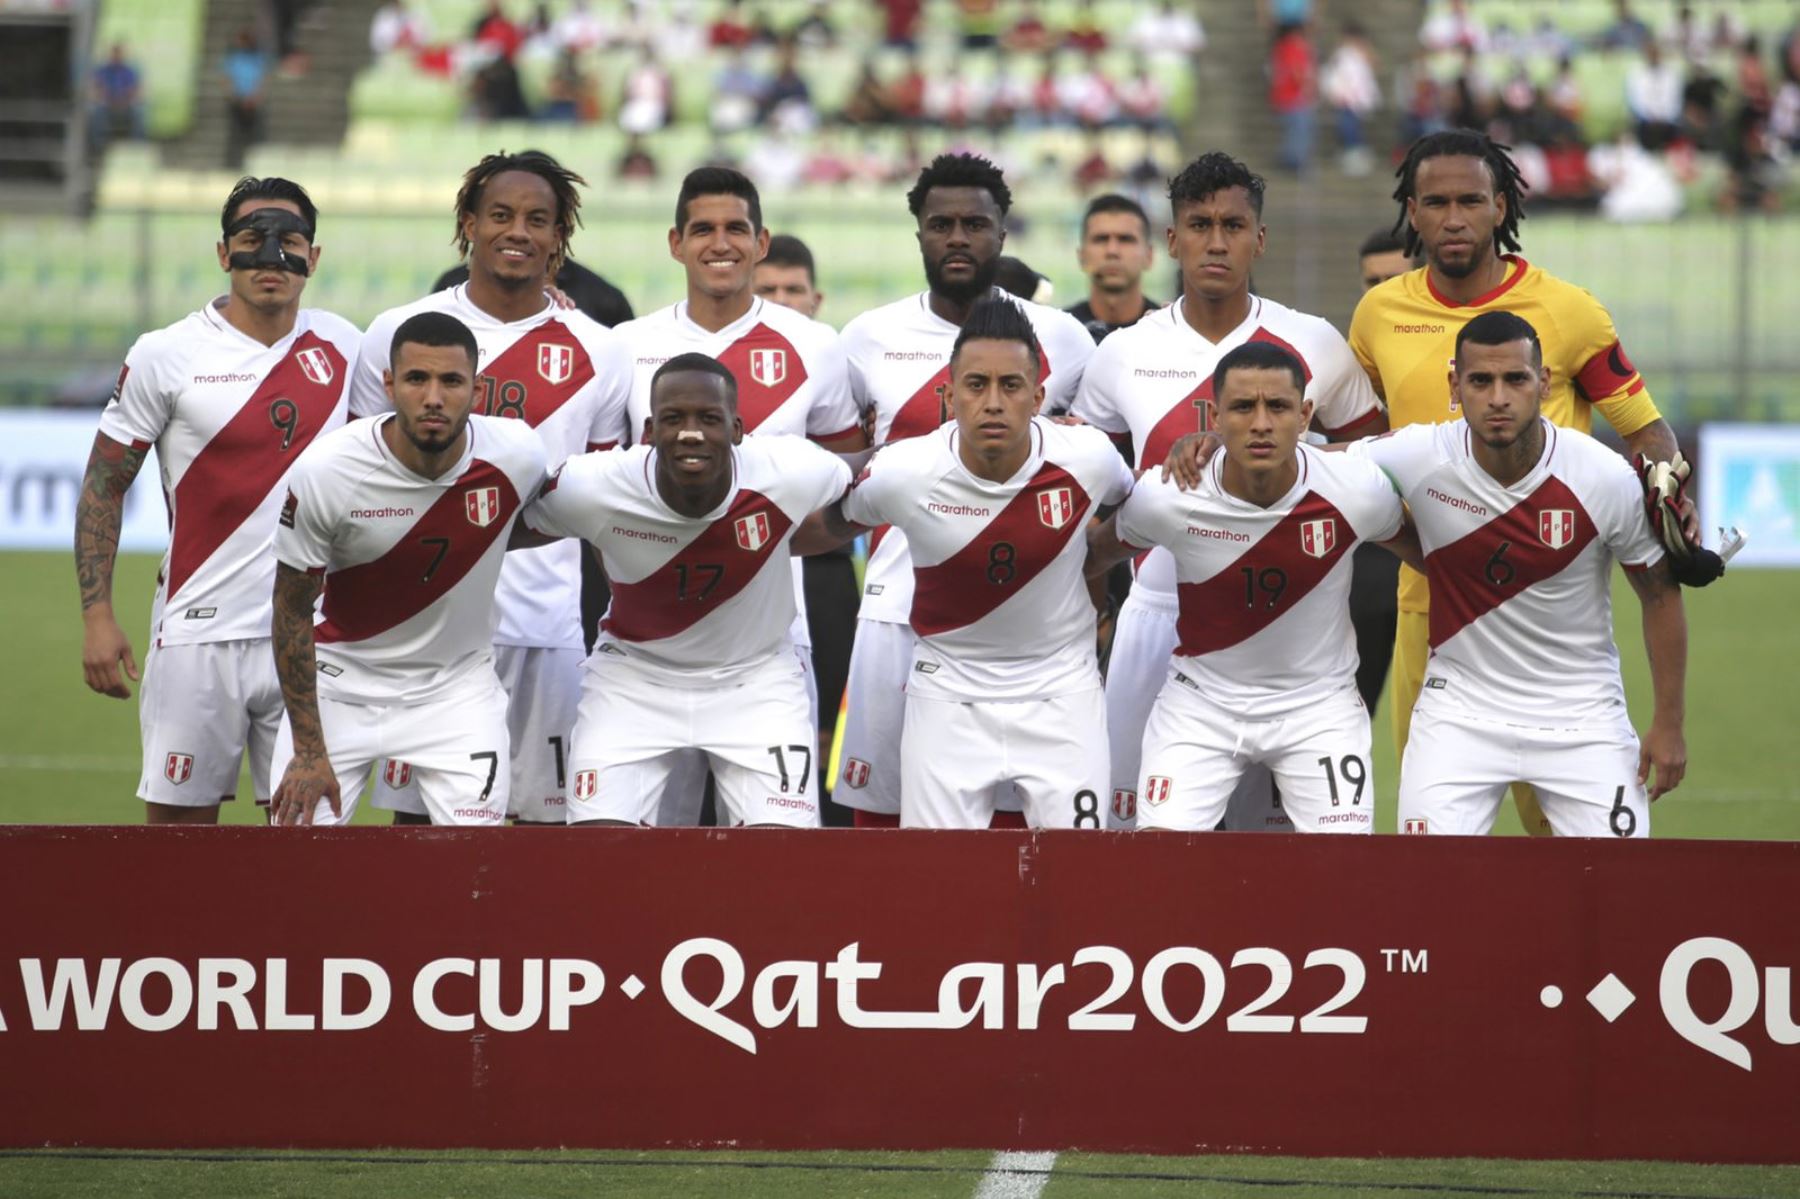 Perú enfrenta a Venezuela en Caracas por las clasificatorias a Catar 2022. Foto: FPF